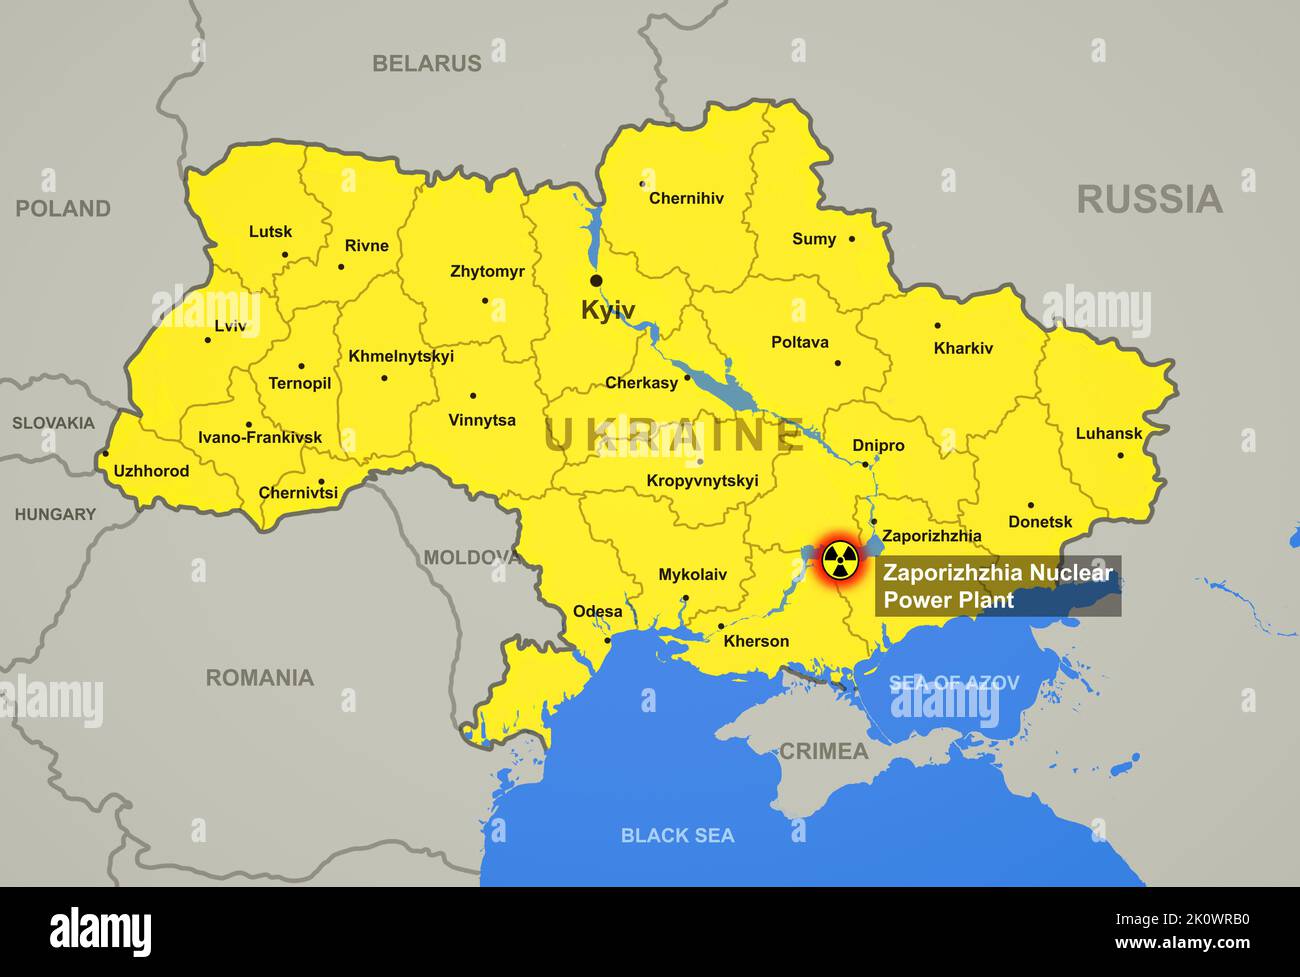 Centrale nucléaire de Zaporizhzhia sur la carte de l'Ukraine avec les villes et les régions, point chaud de la guerre russo-ukrainienne. Frontière des pays sur la carte de l'Europe. Zaporizhz Banque D'Images